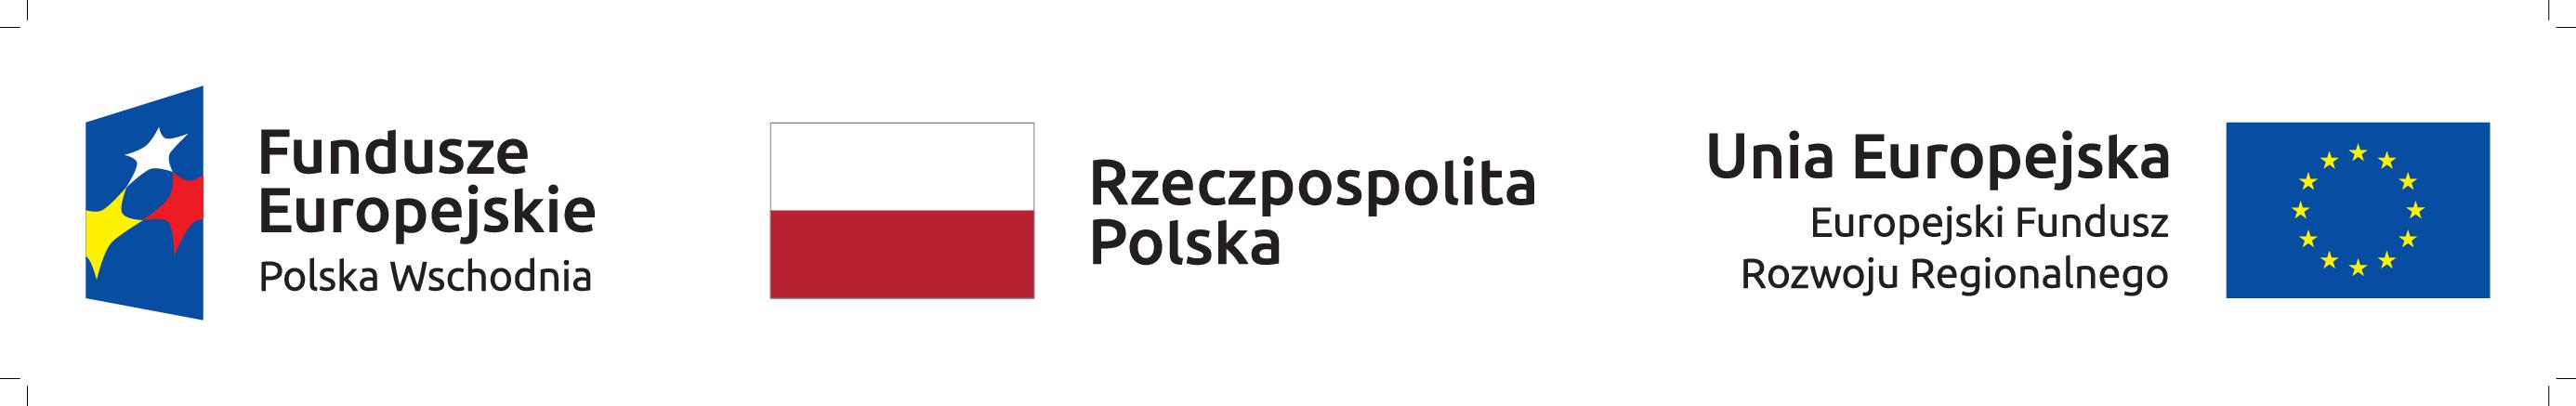 Logotyp Fundusze Europejskie, Rzeczpospolita Polska i Unia Europejska